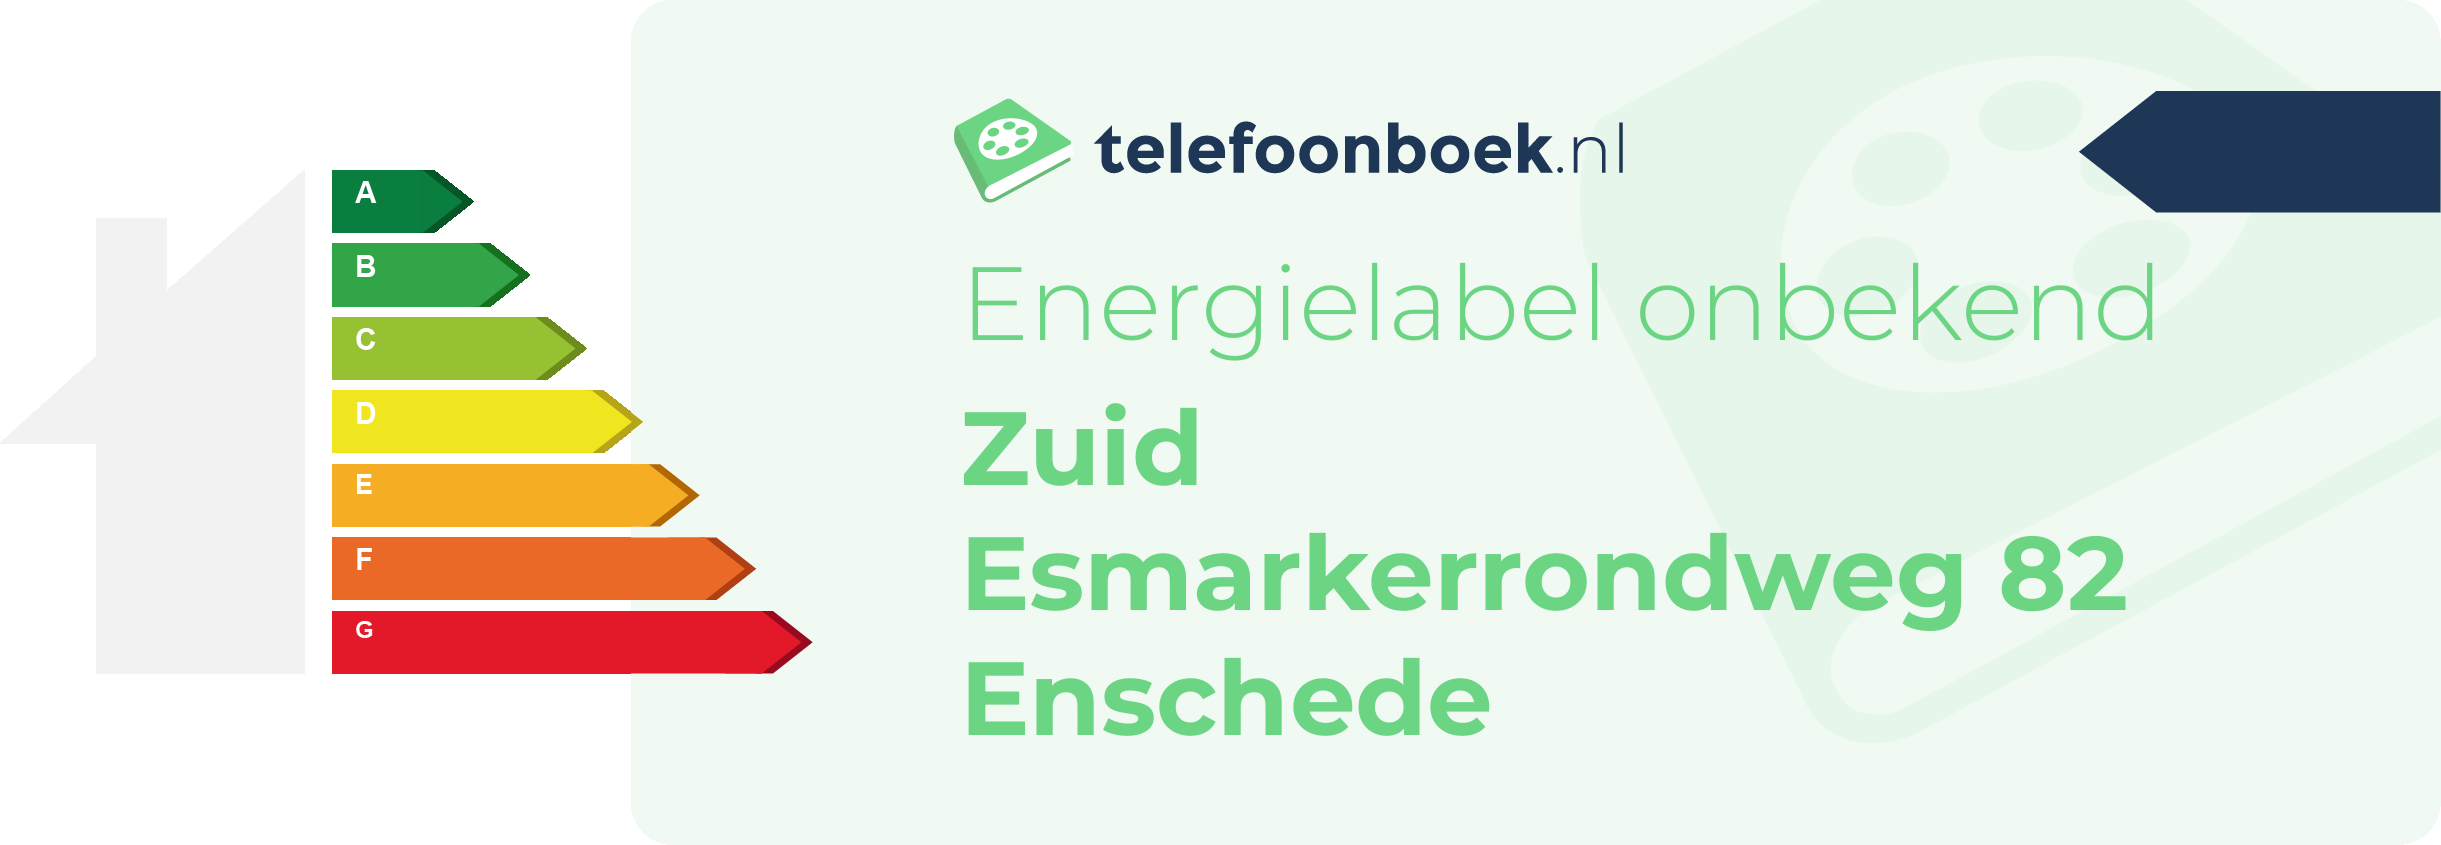 Energielabel Zuid Esmarkerrondweg 82 Enschede